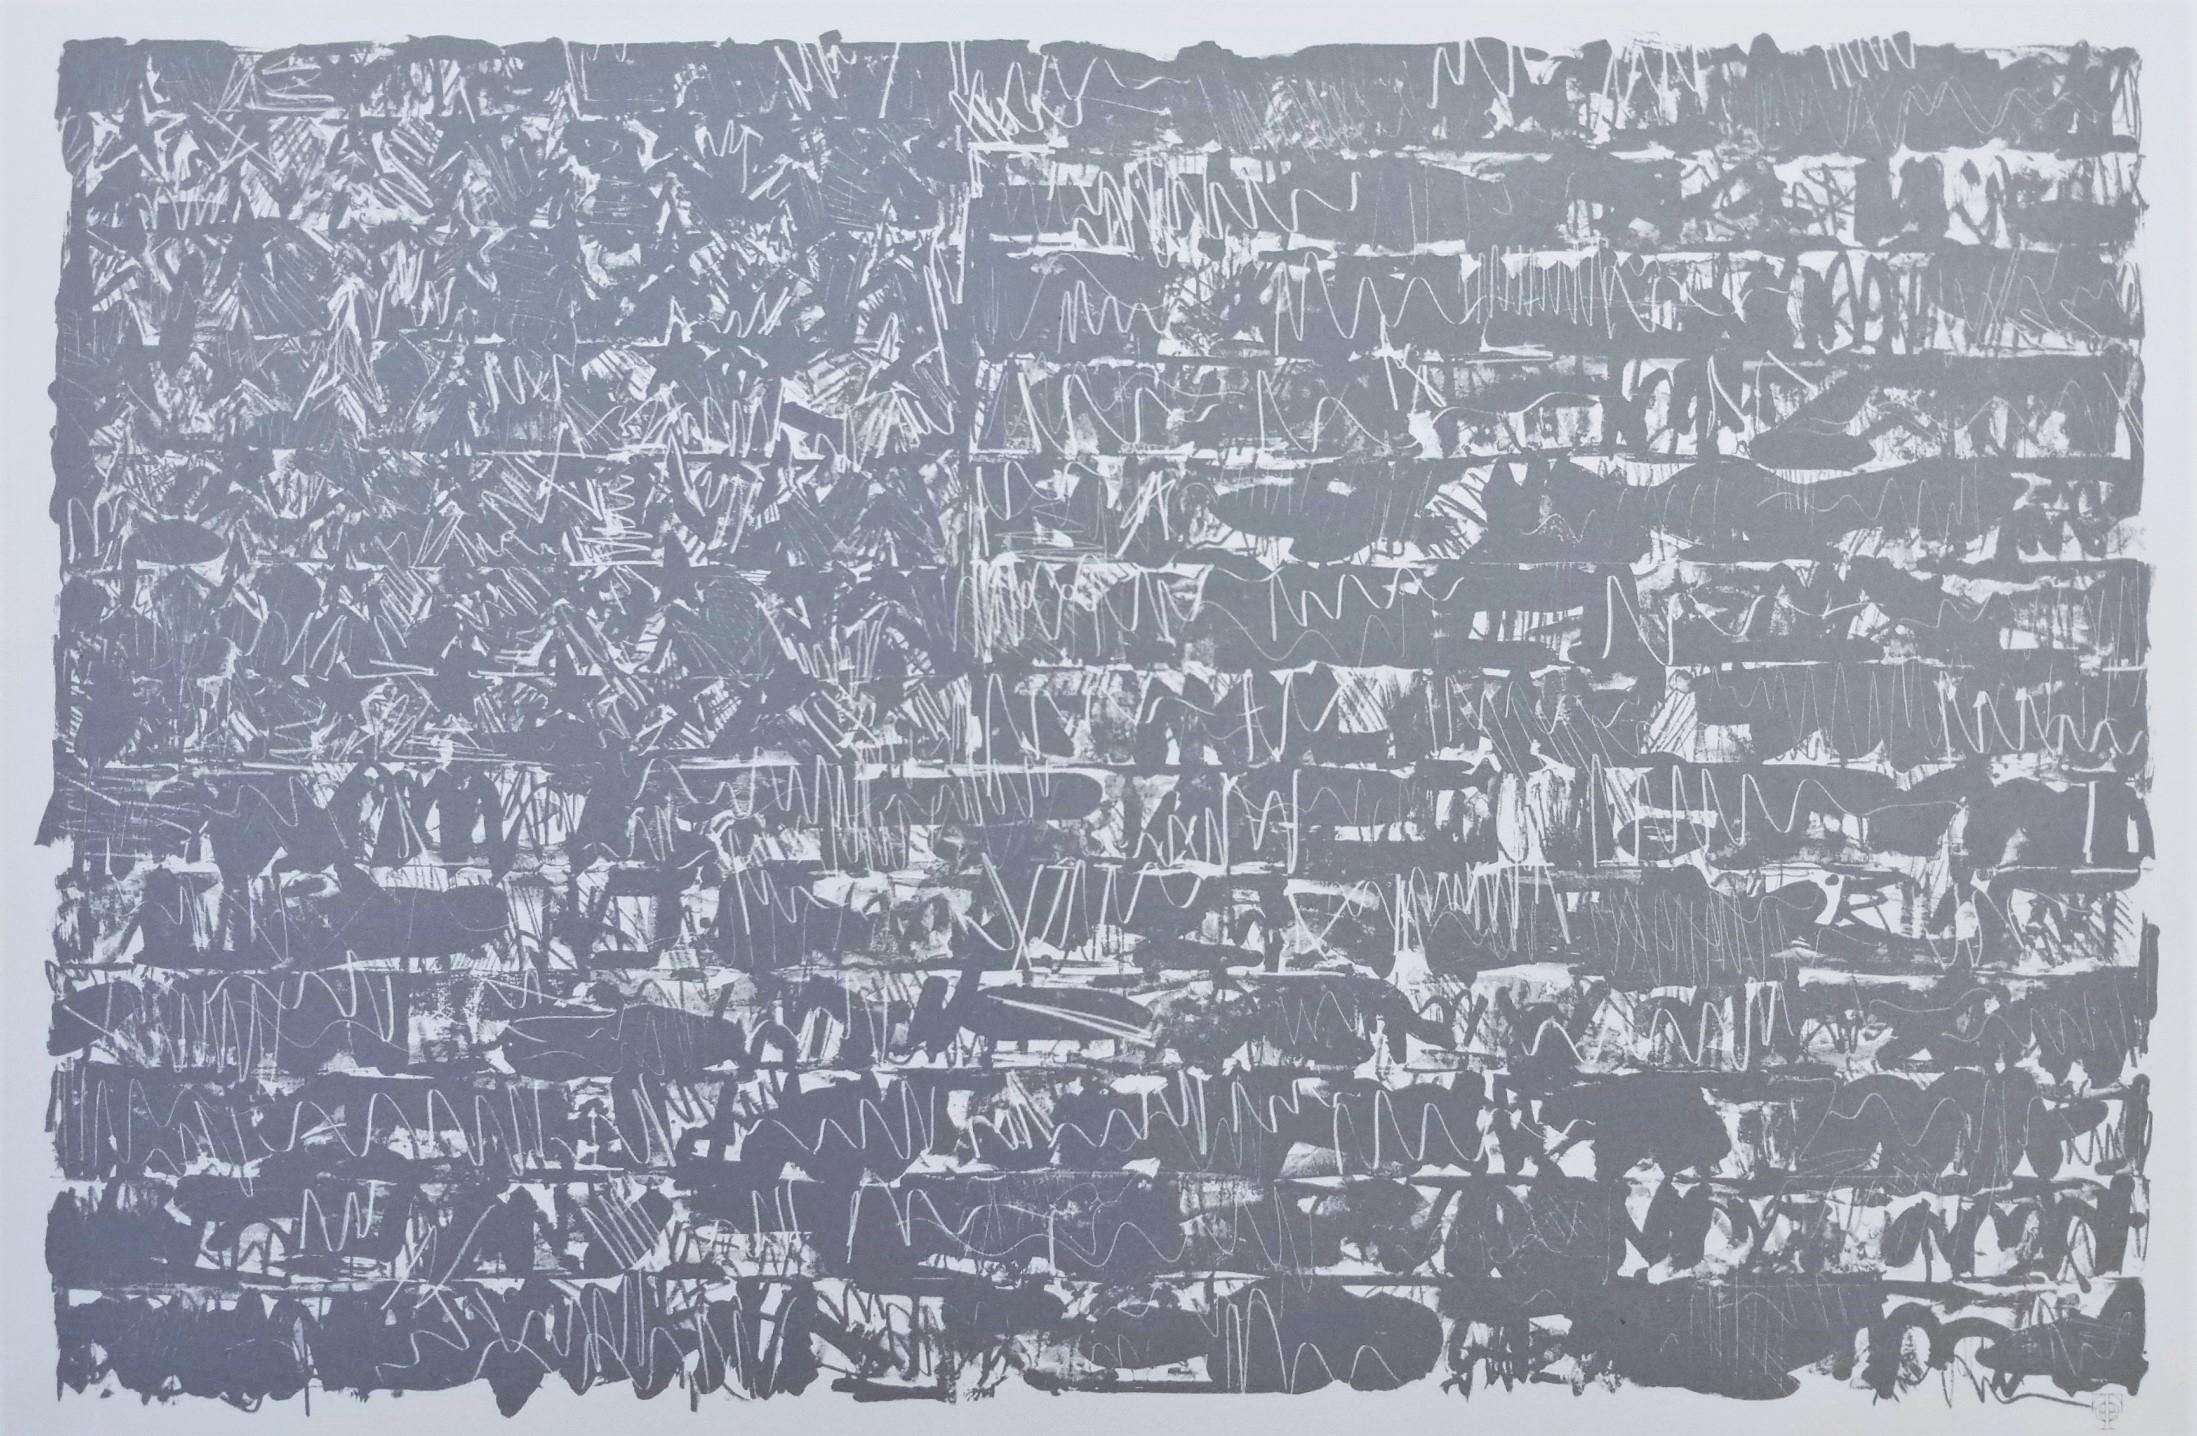 Künstler: (nach) Jasper Johns (Amerikaner, 1930-)
Titel: "Flagge III"
Reihe: Faksimile-Katalog der Drucke von Jasper Johns
*Ausgestellt ohne Vorzeichen
Jahr: 1975
Medium: Offset-Lithographie auf cremefarbenem Arches-Papier
Limitierte Auflage: